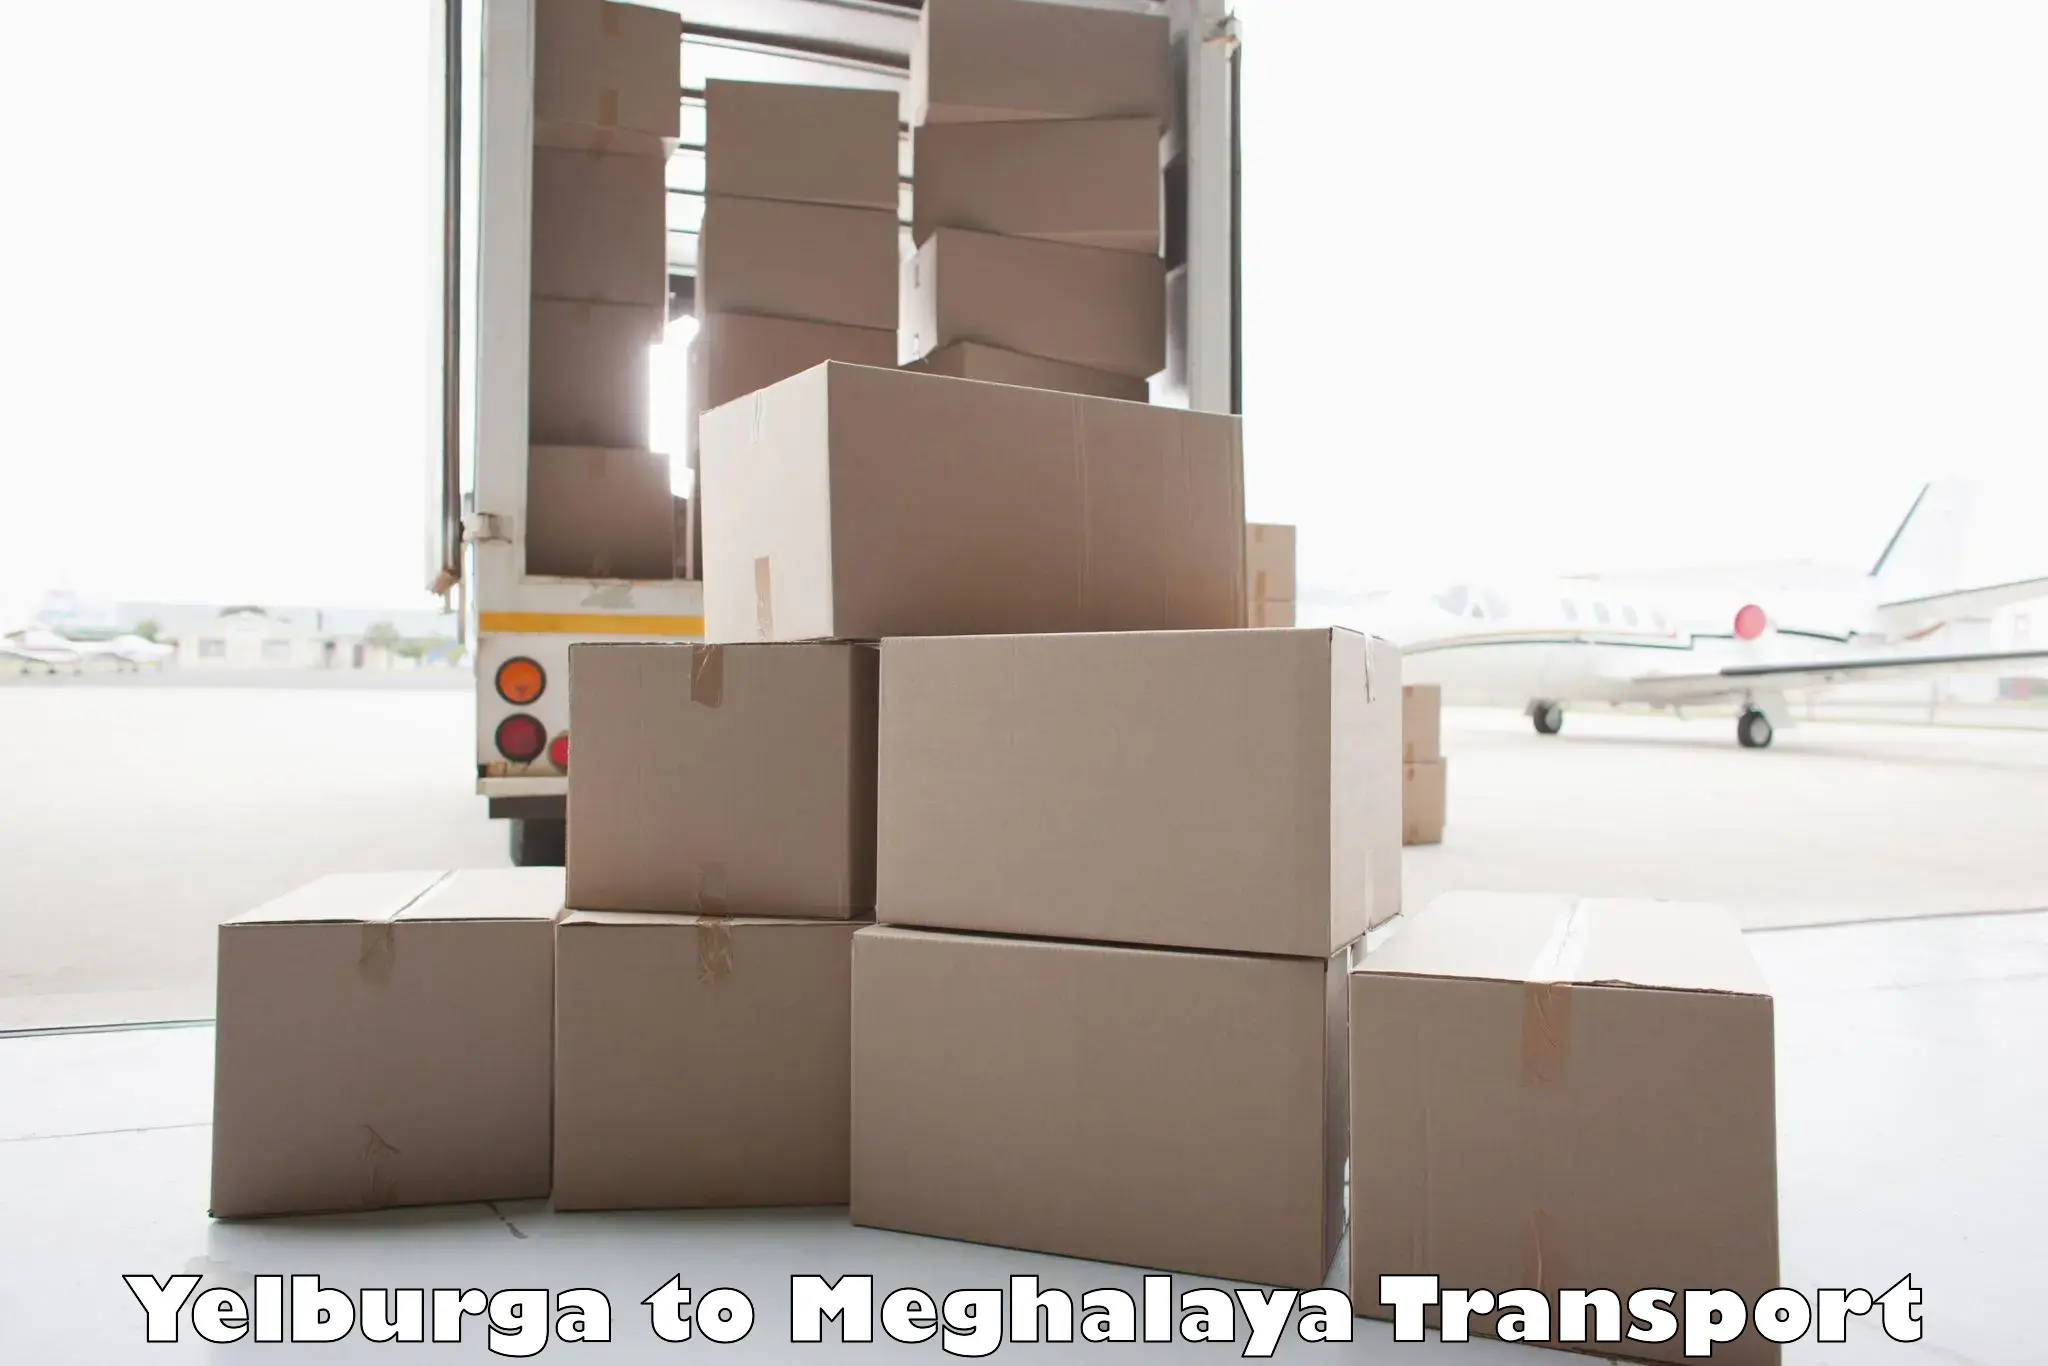 Parcel transport services Yelburga to Meghalaya